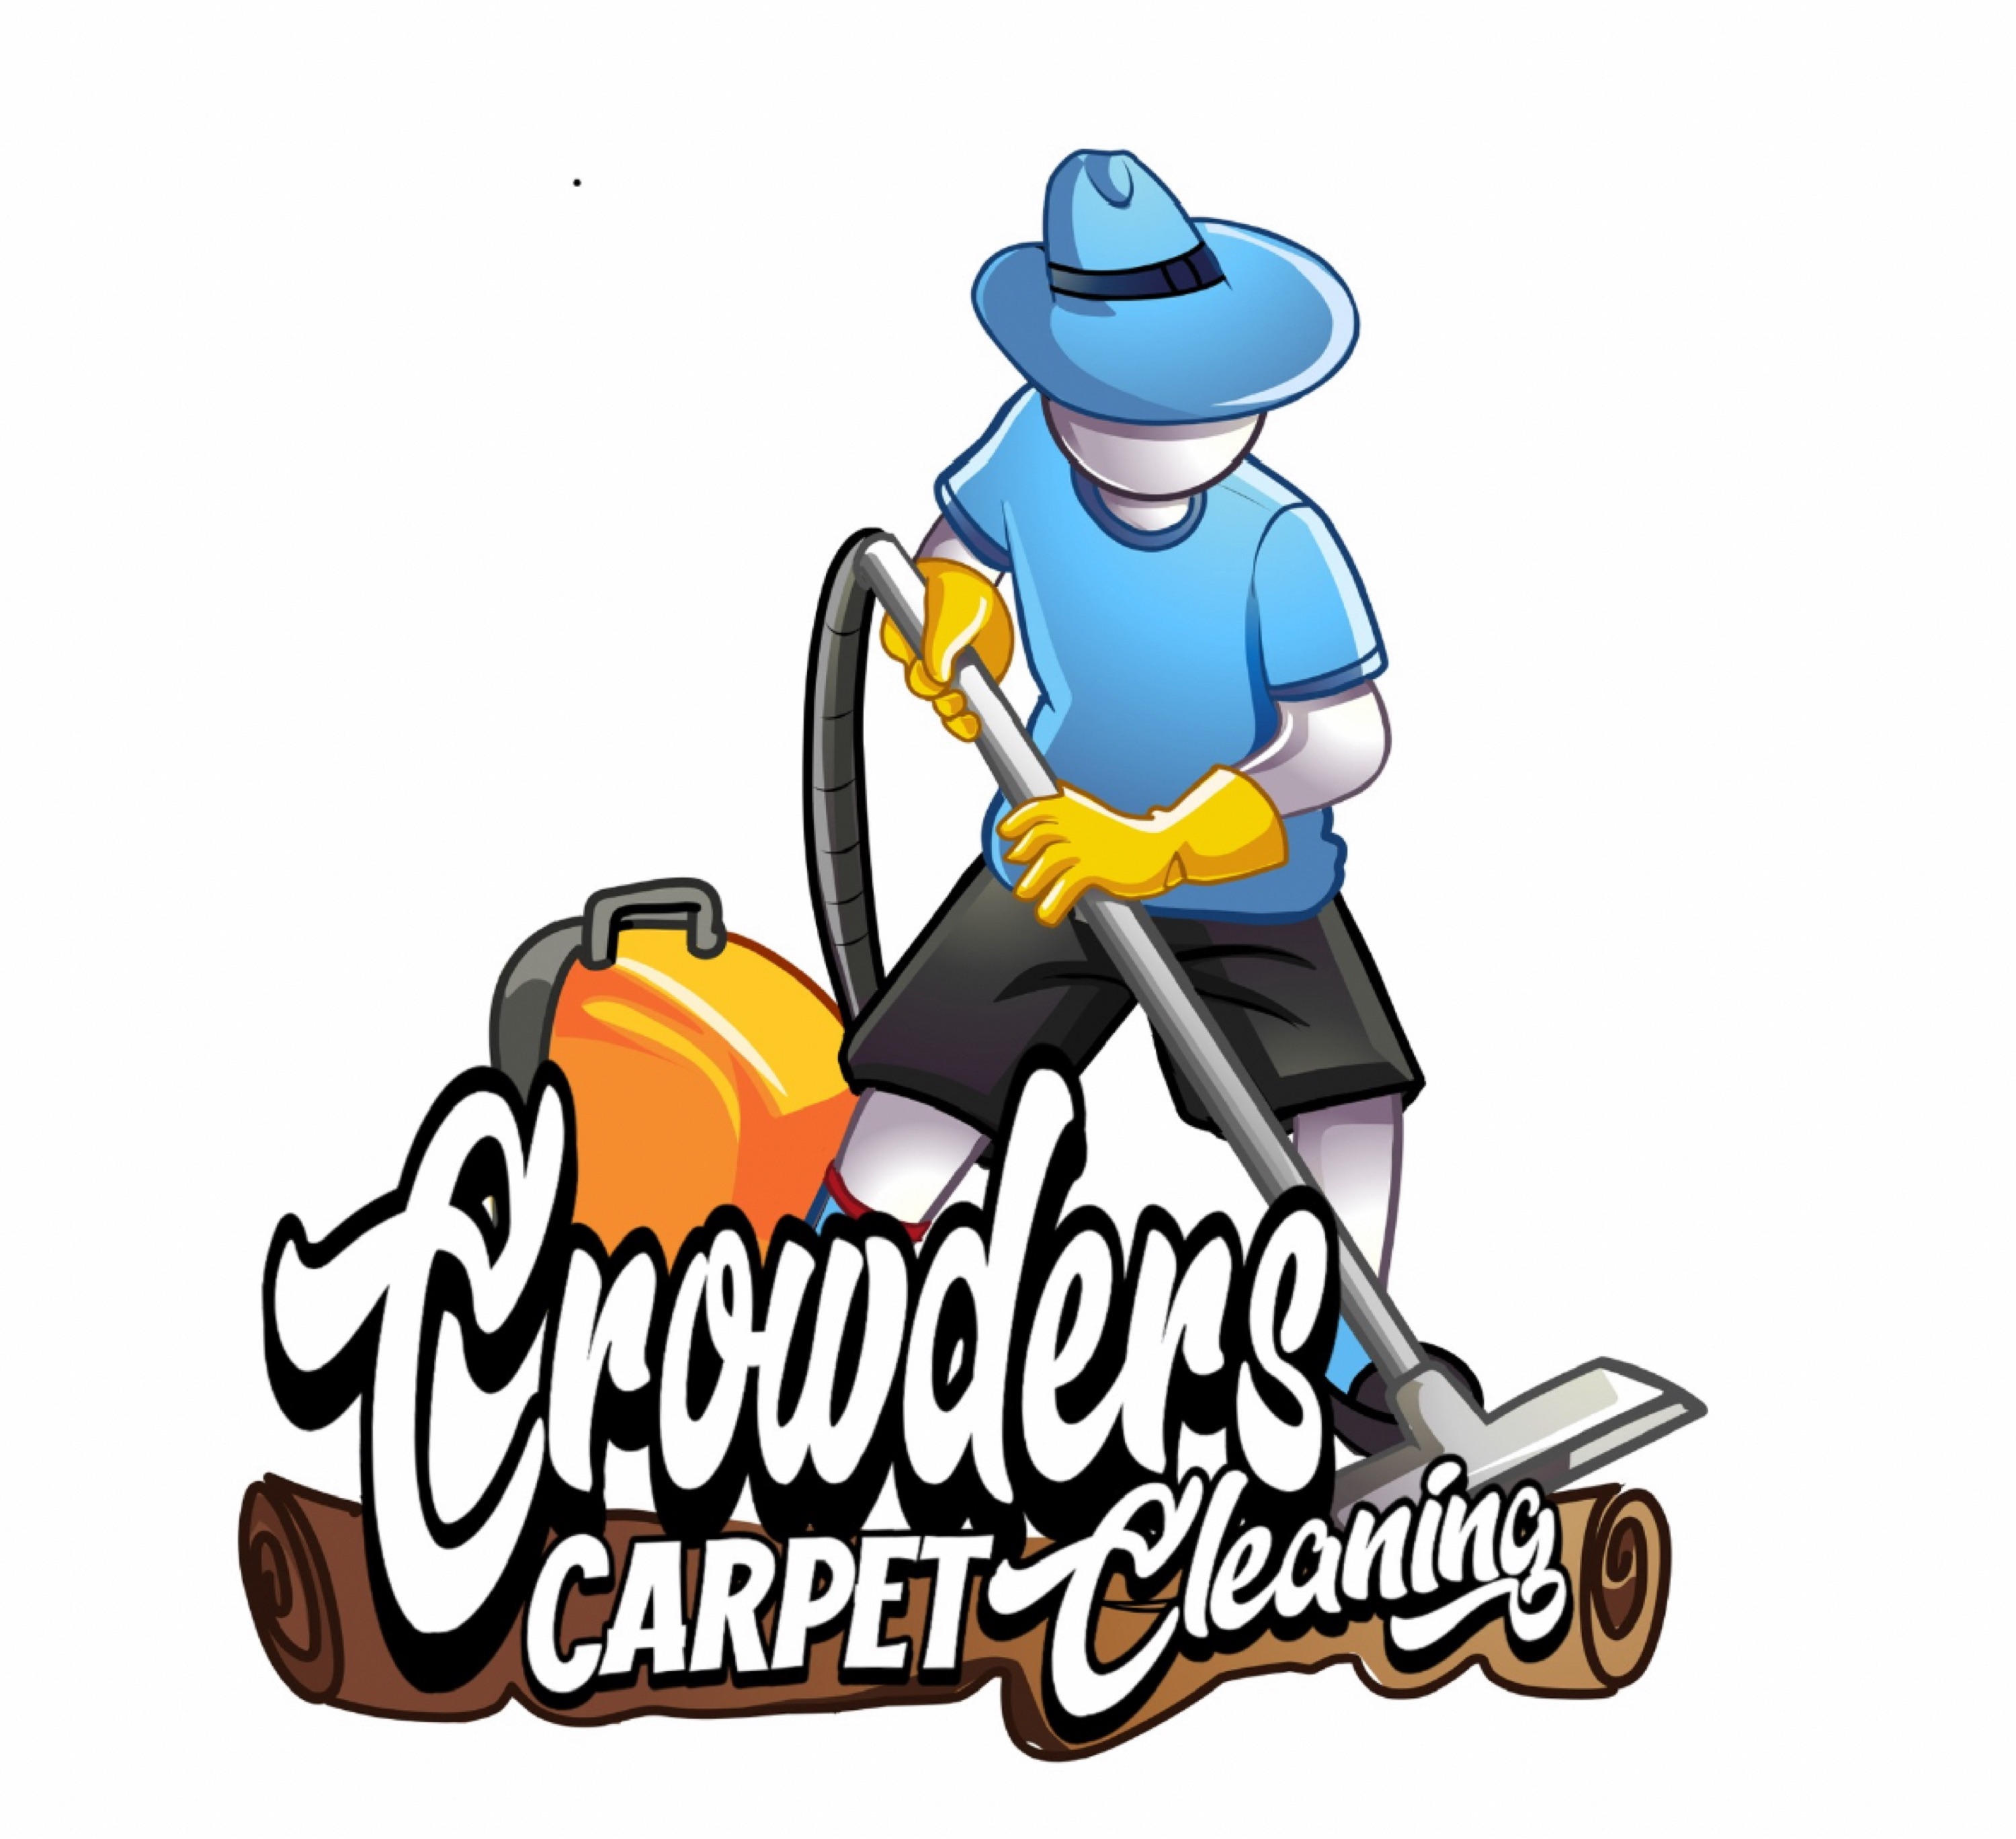 Crowder's Carpet Cleaning Logo